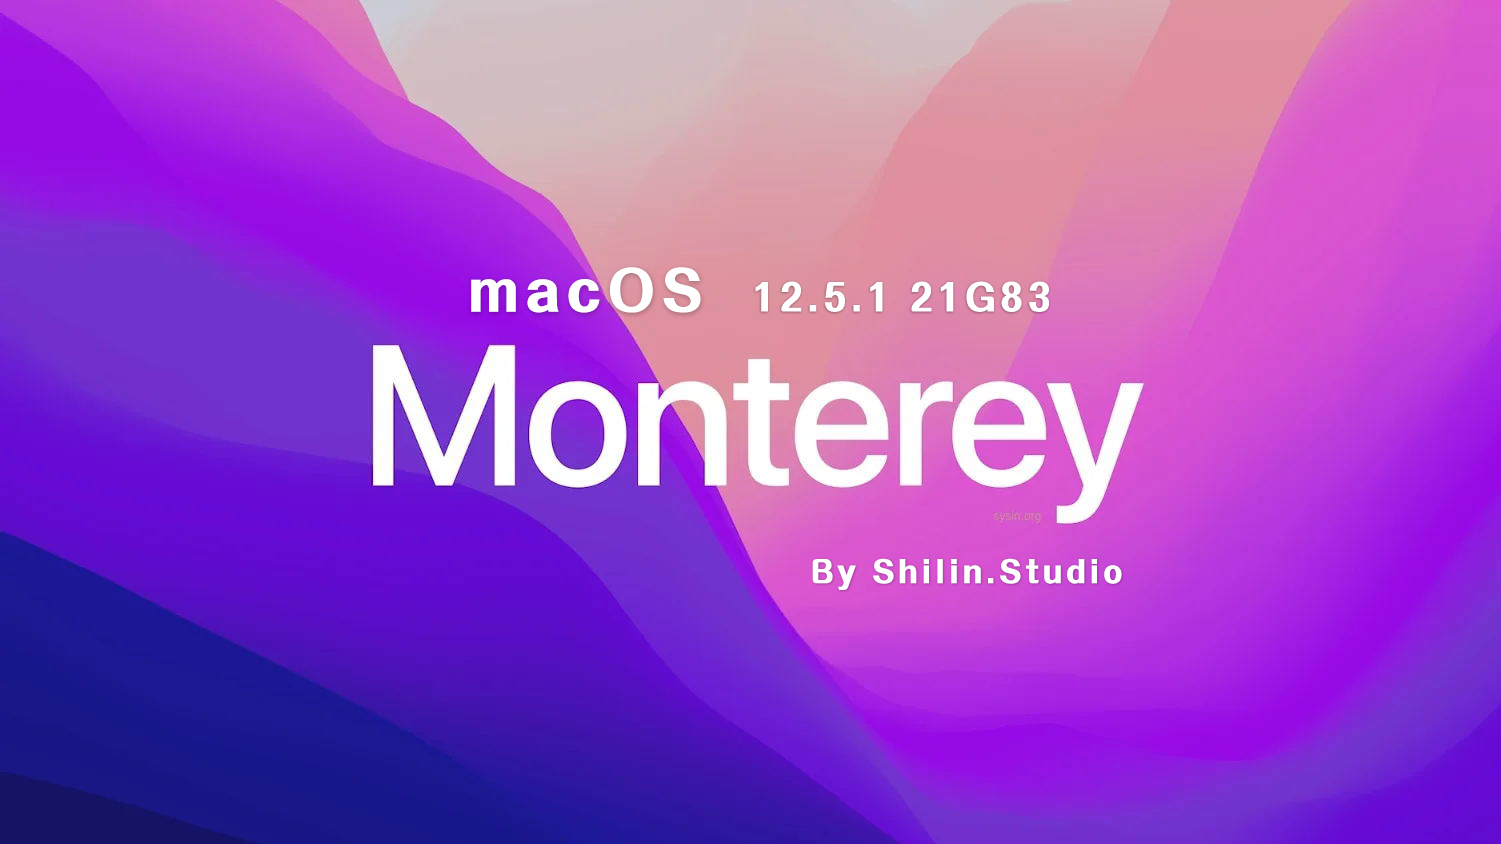 [macOS]macOS_Monterey_12.5.1_21G83_For_Shilin.Studio.iso可引导可虚拟机安装镜像包（已修复引导并优化）